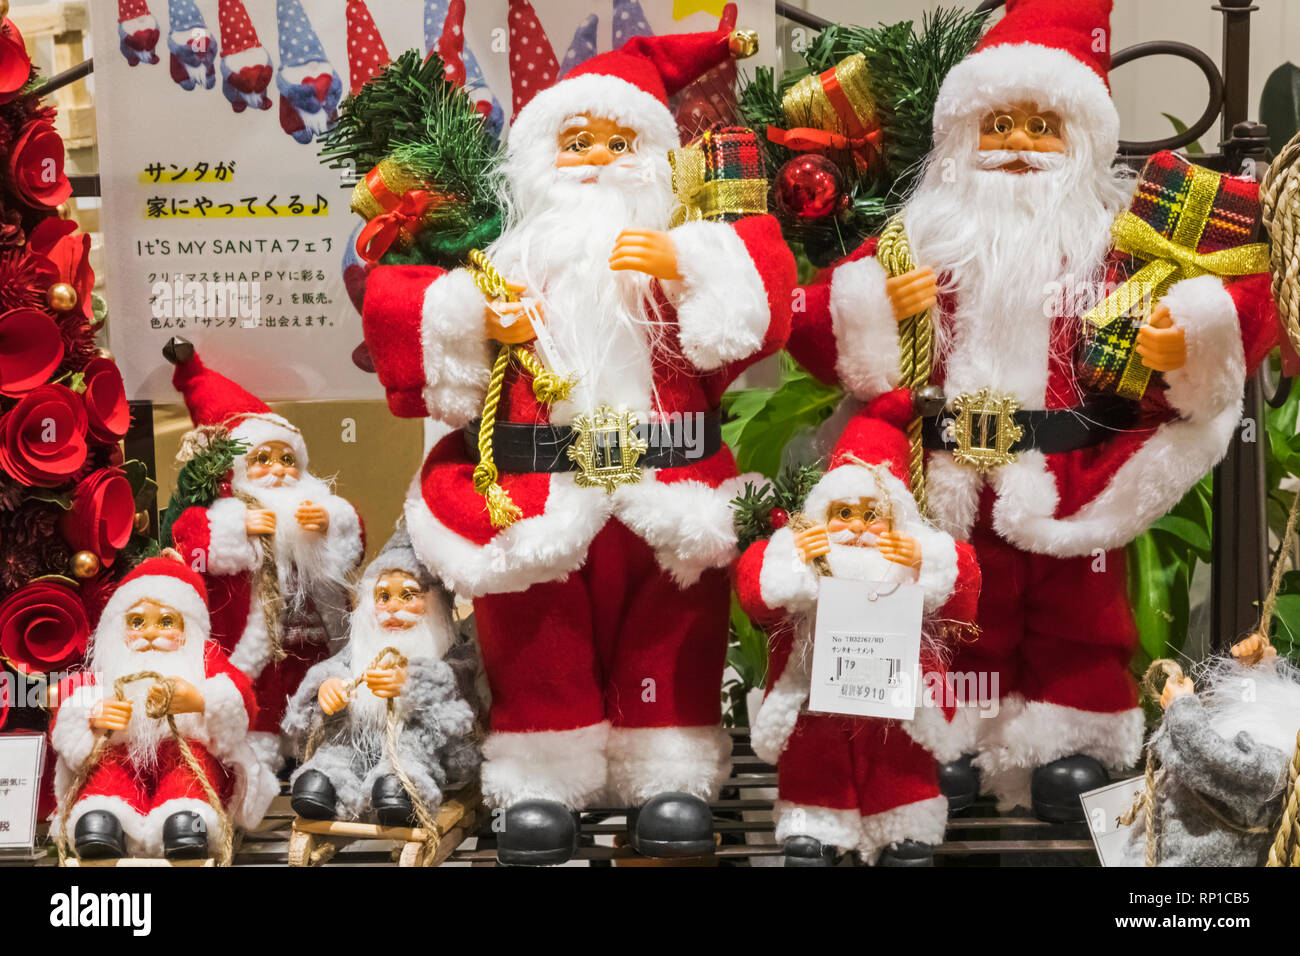 Le Japon, Honshu, Tokyo, boutique de décoration de Noël affichage des Toy Santas Banque D'Images